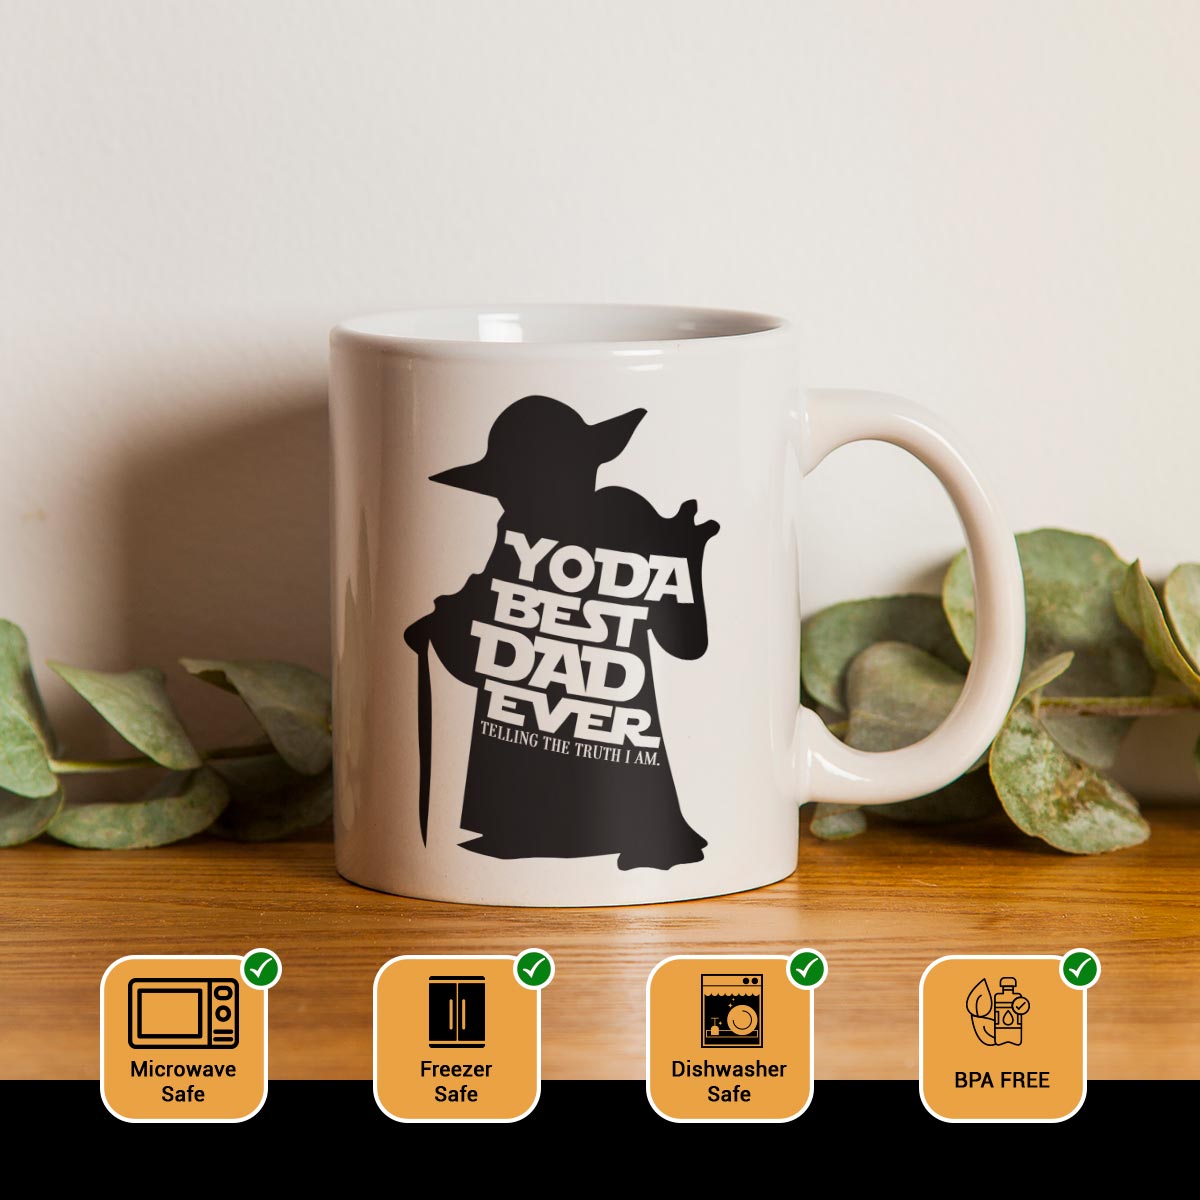 Yoda Best Dad Ever Coffee Mug